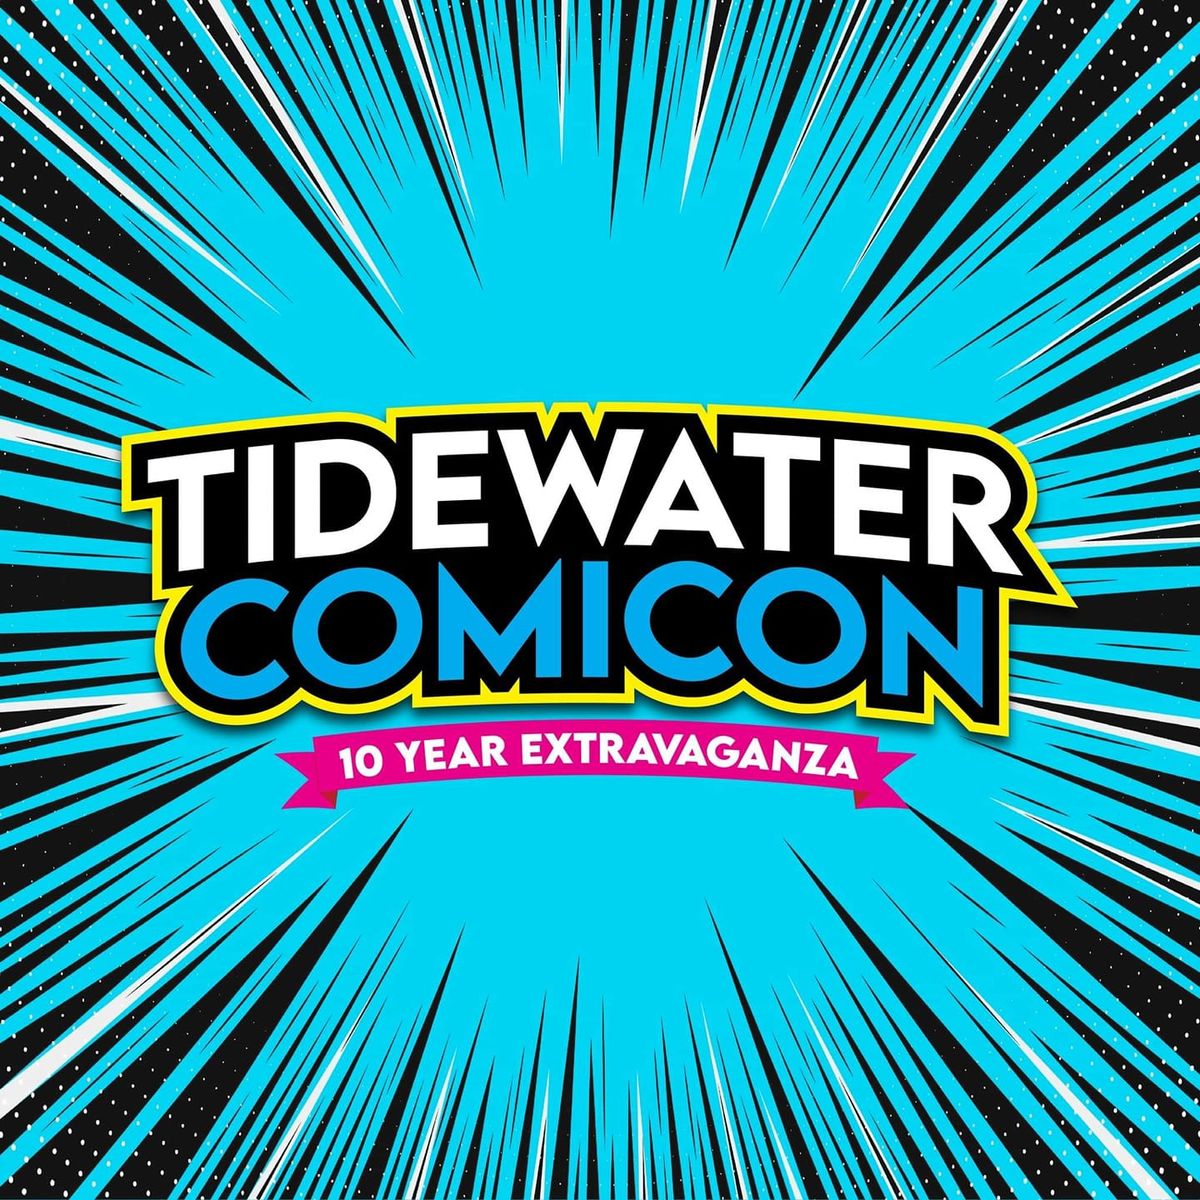 Tide Water Comic Con